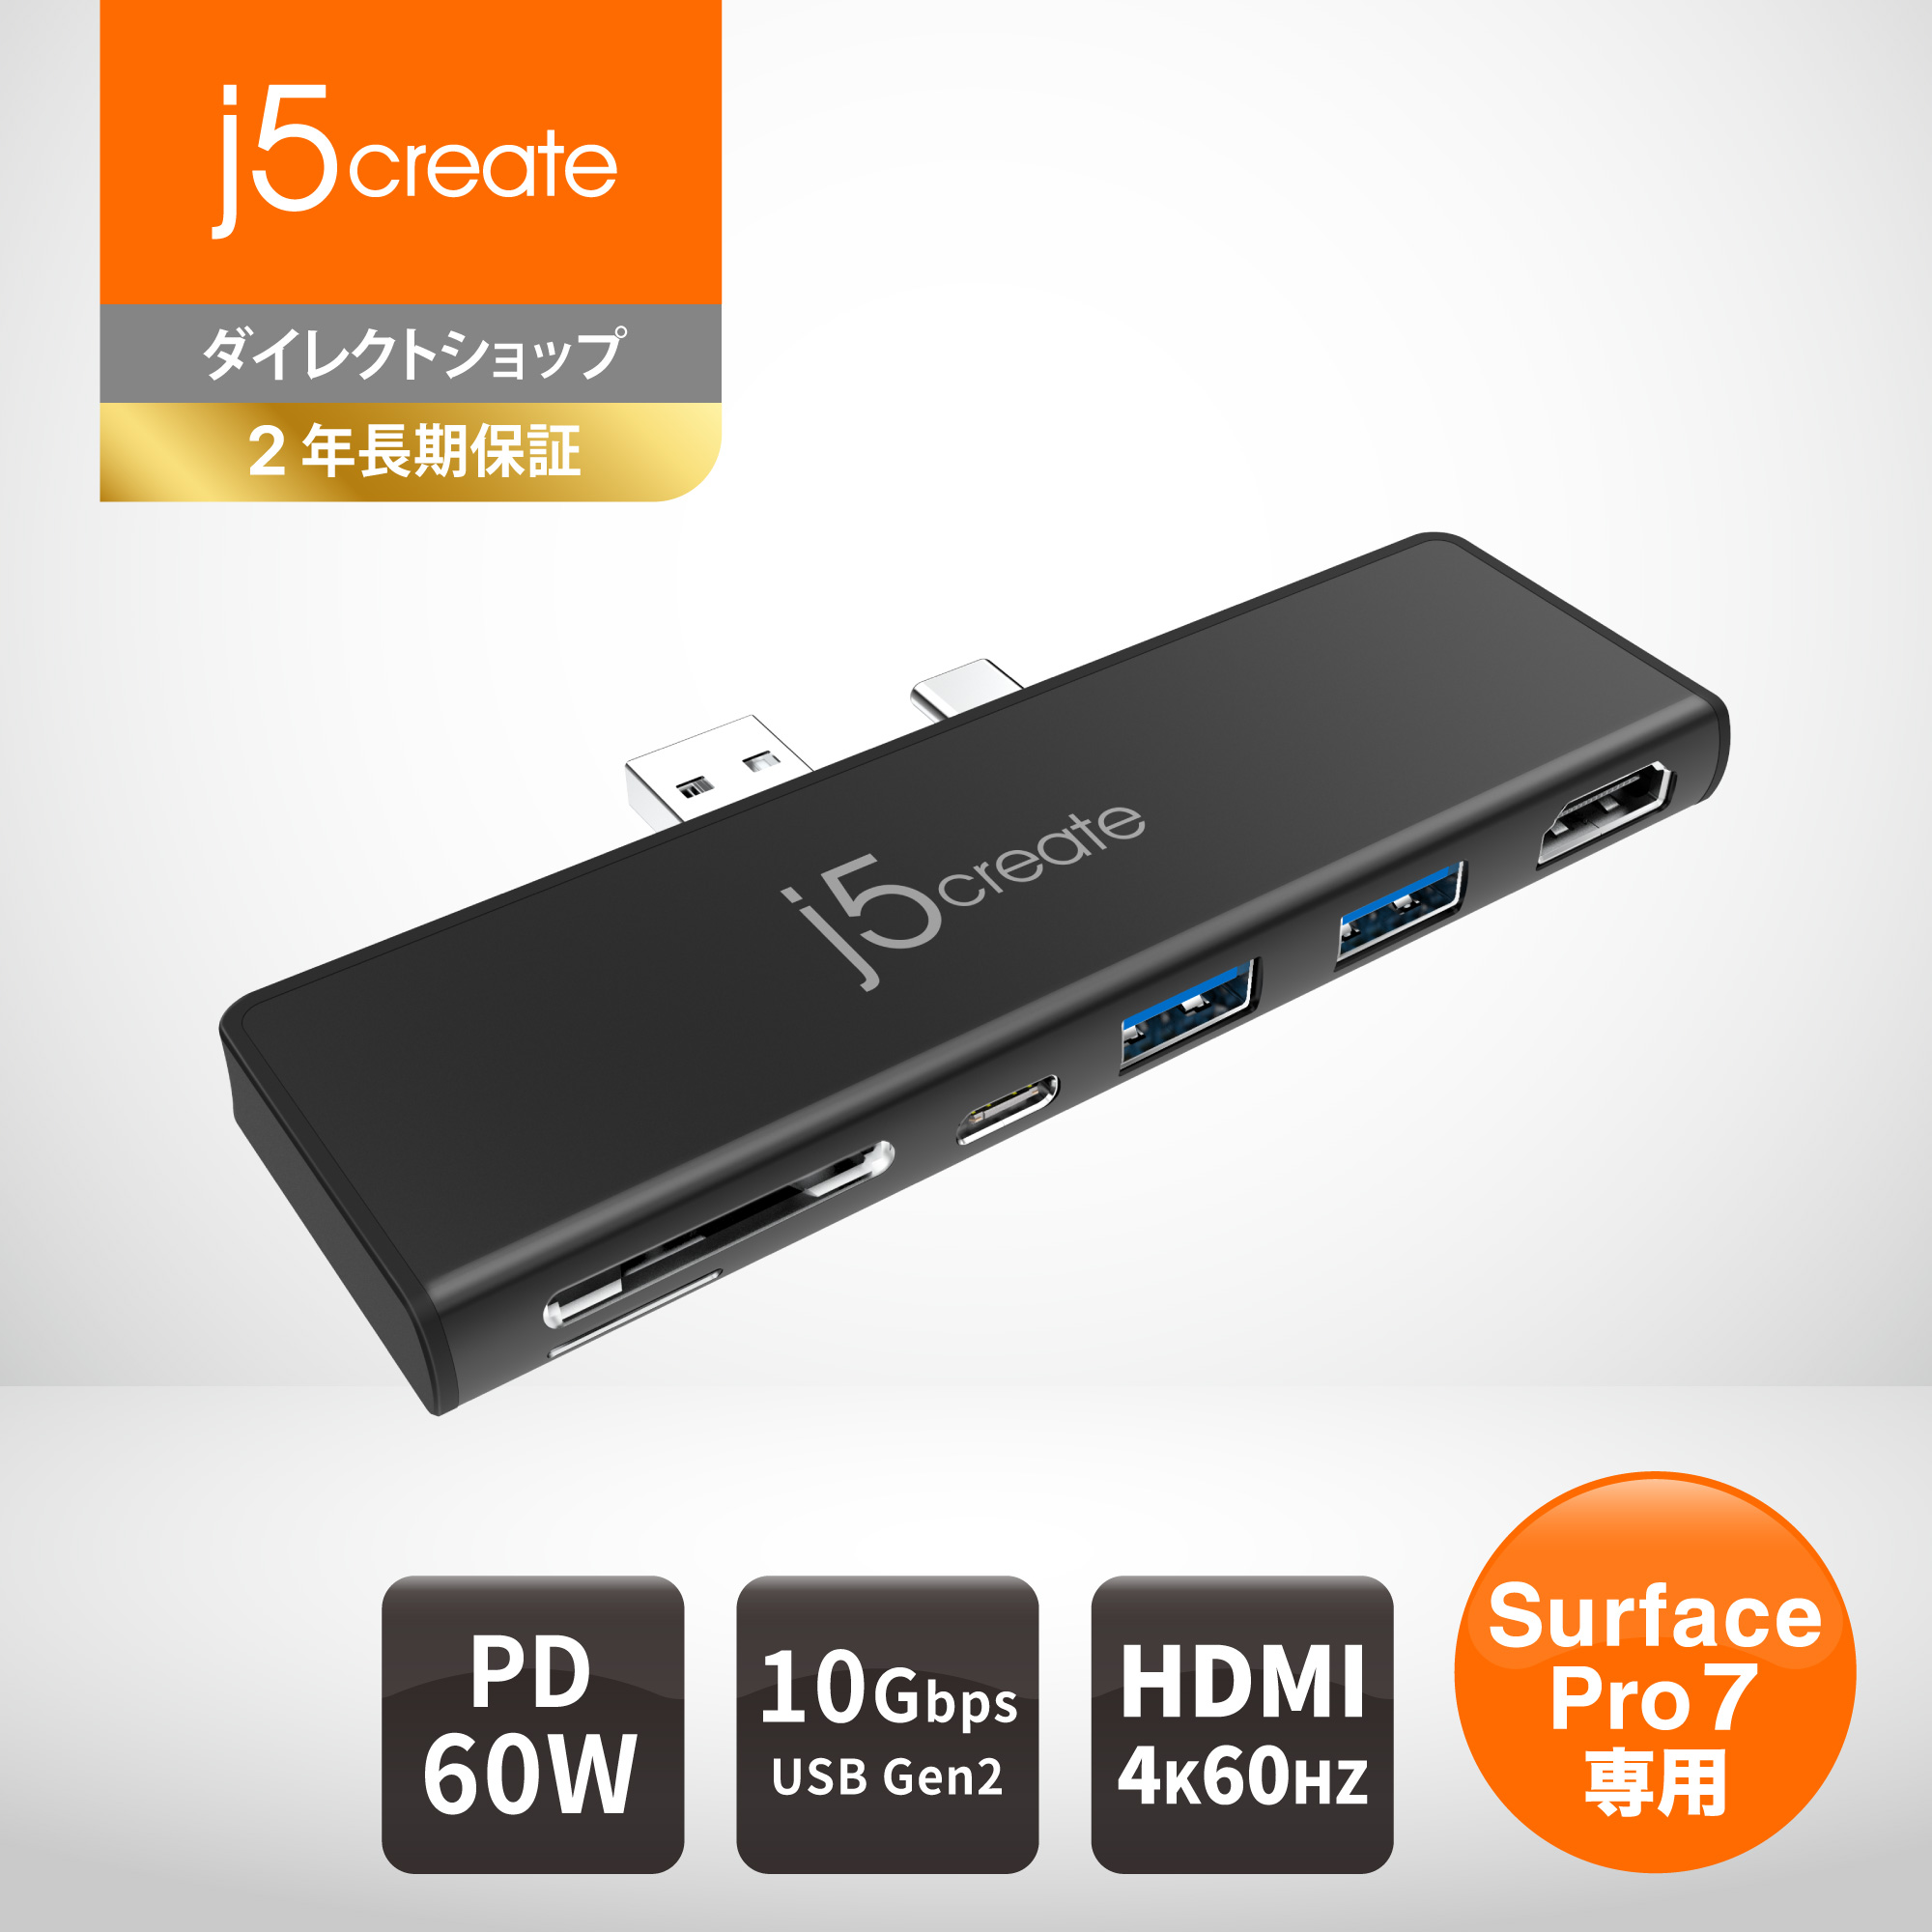 楽天市場】j5 create Surface Pro 7専用 ミニ ドッキングステーション ブラック マルチハブ USBハブ 【USB-A Gen2 10G×2 , USB-C 3.1 Gen2 10G×1 , 4K 60Hz HDMI , MicroSD/SDスロット】 Power Delivery 最大60W 超スリム設計 アルミニウム筐体 :